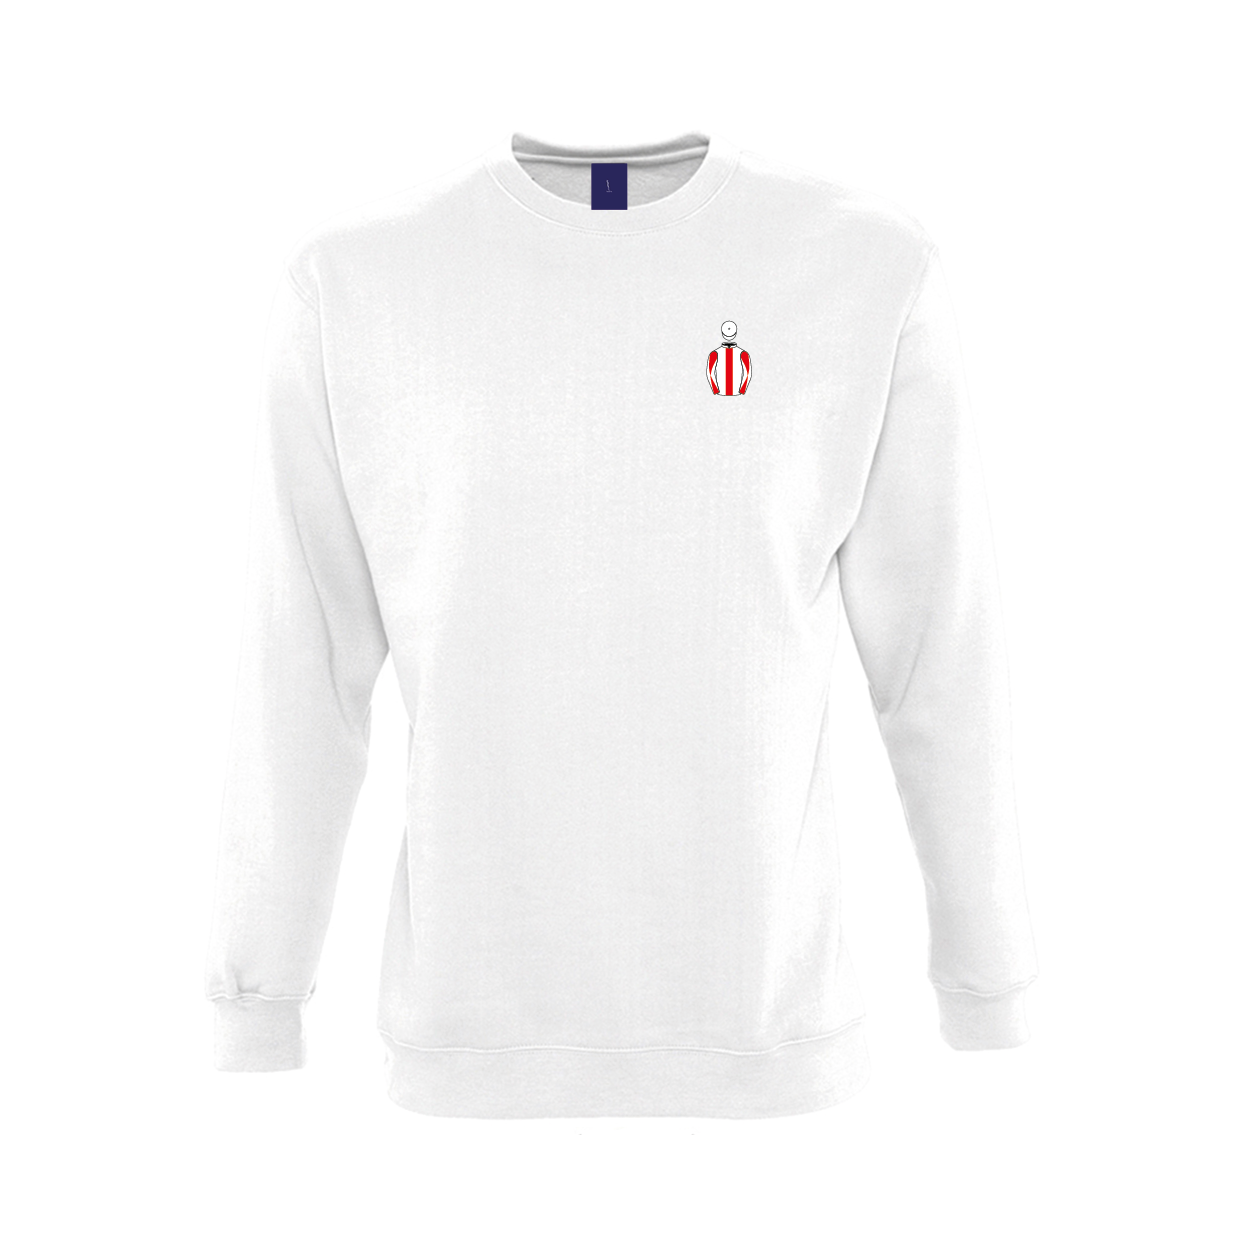 Unisex Steven Packham Embroidered Sweatshirt - Clothing - Hacked Up